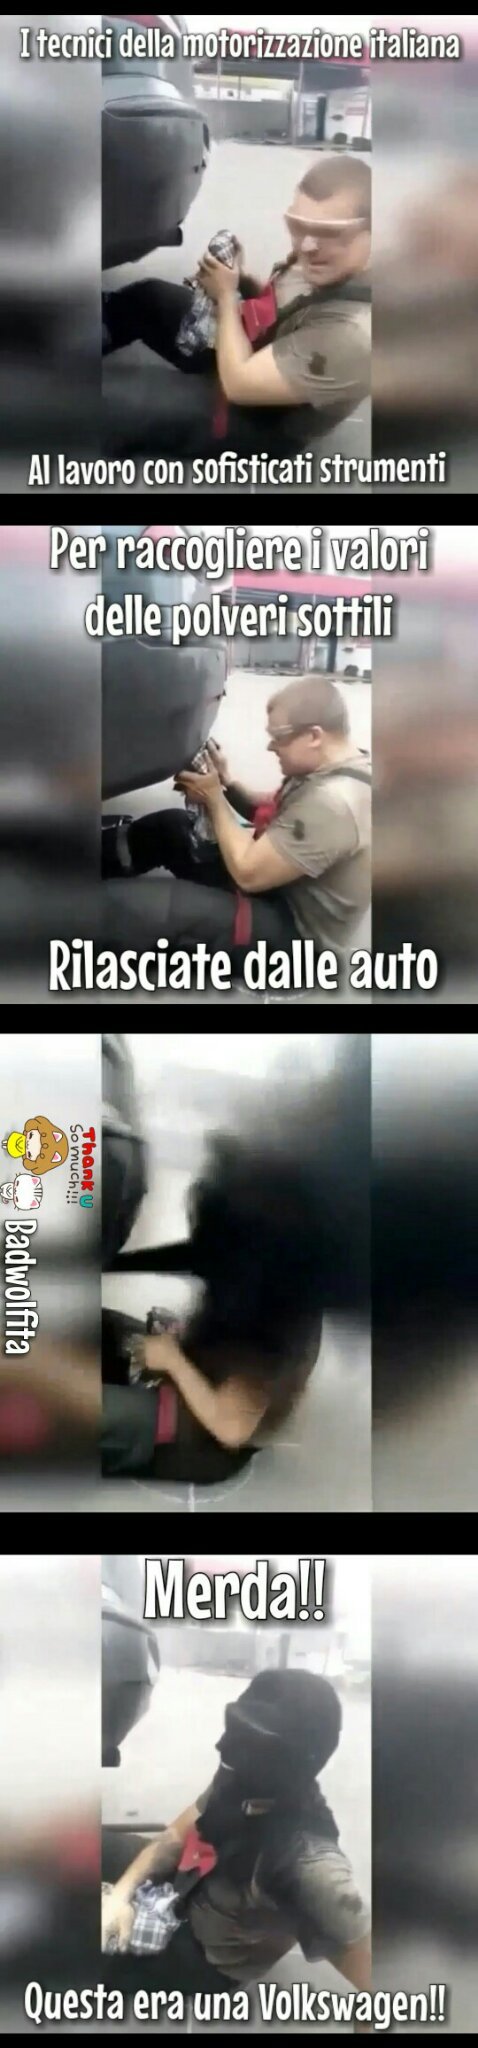 Al via i controlli approfonditi su tutte le auto diesel circolanti in Italia - meme